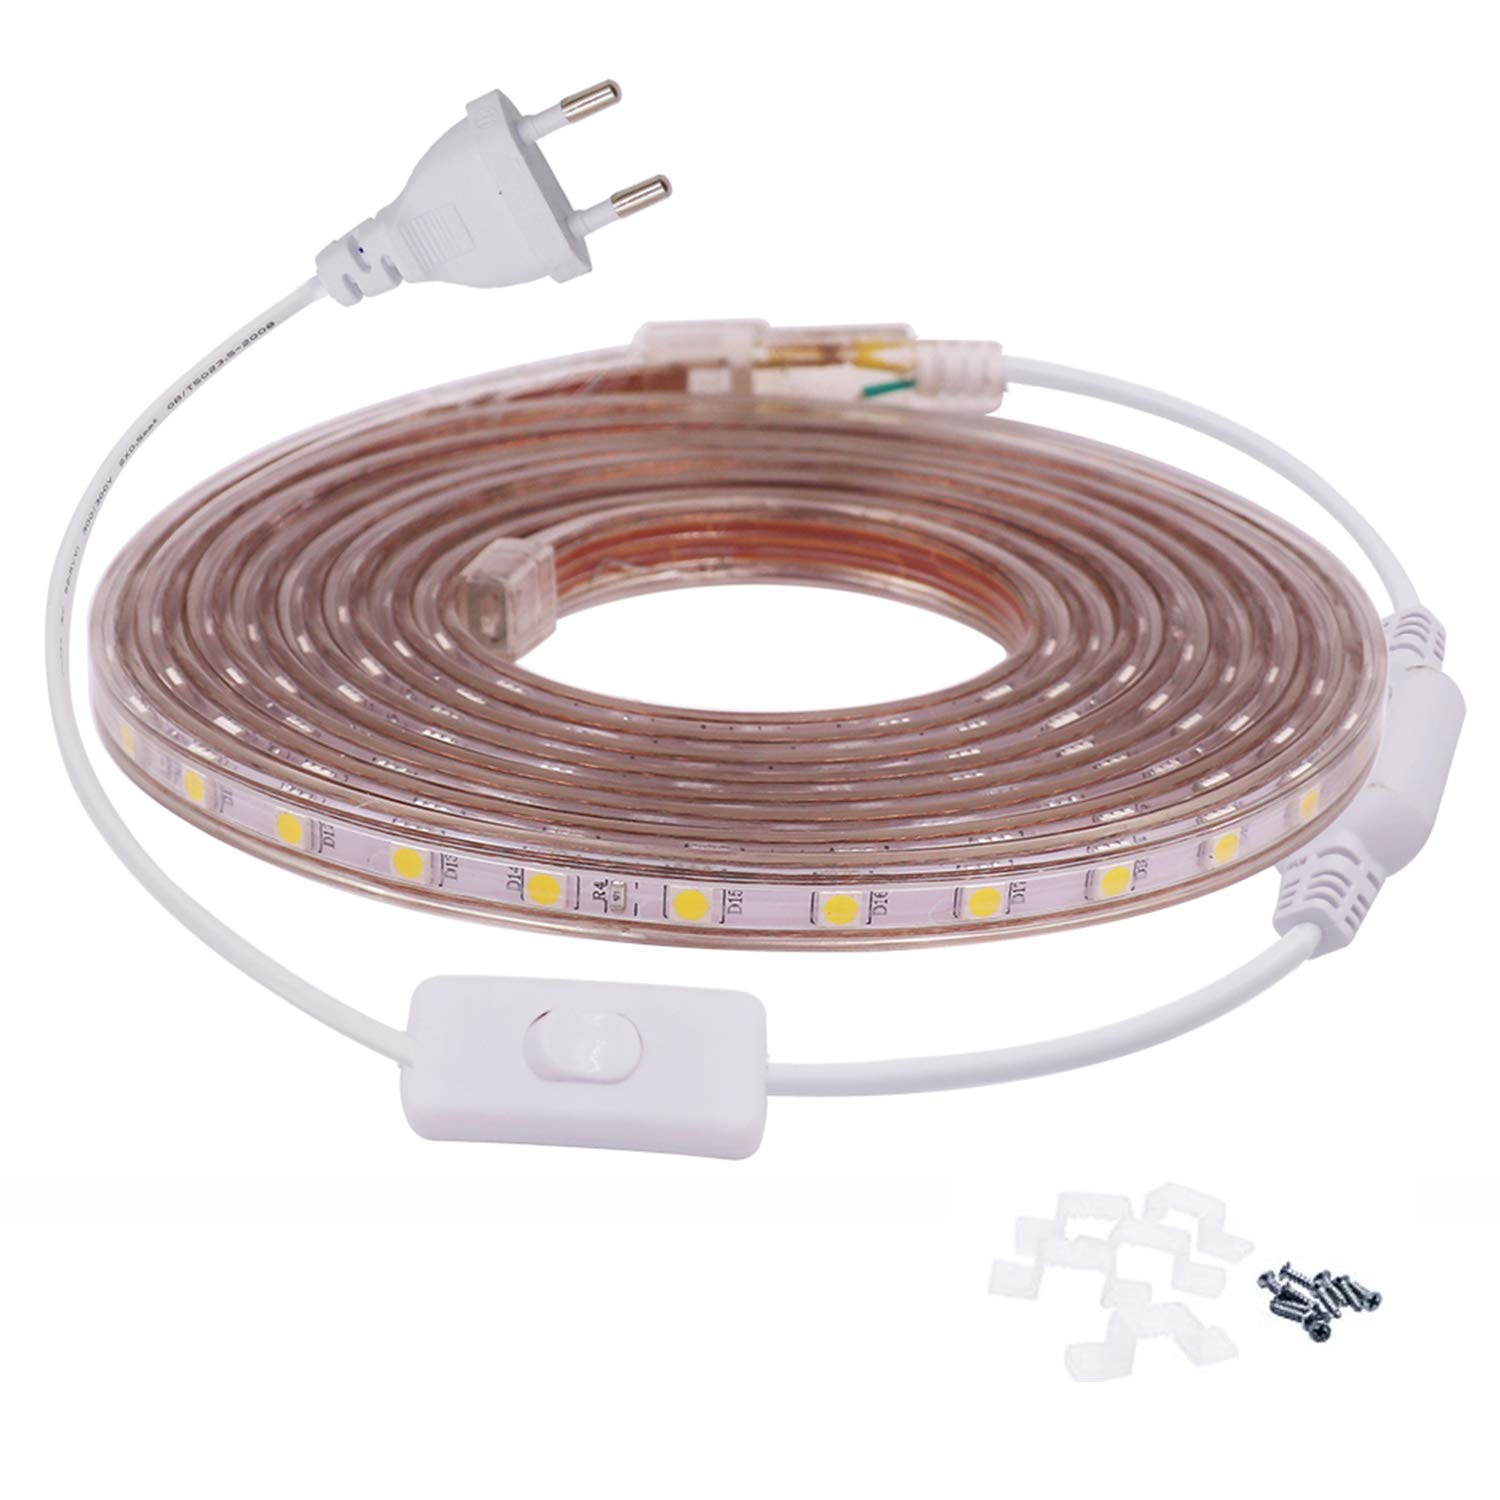 FOLGEMIR 5m Warmweiß LED Band mit Schalter, 220V 230V Lichtleiste, 60 Leds/m Strip, IP65 Lichtschlauch, milde Hintergrundbeleuchtung